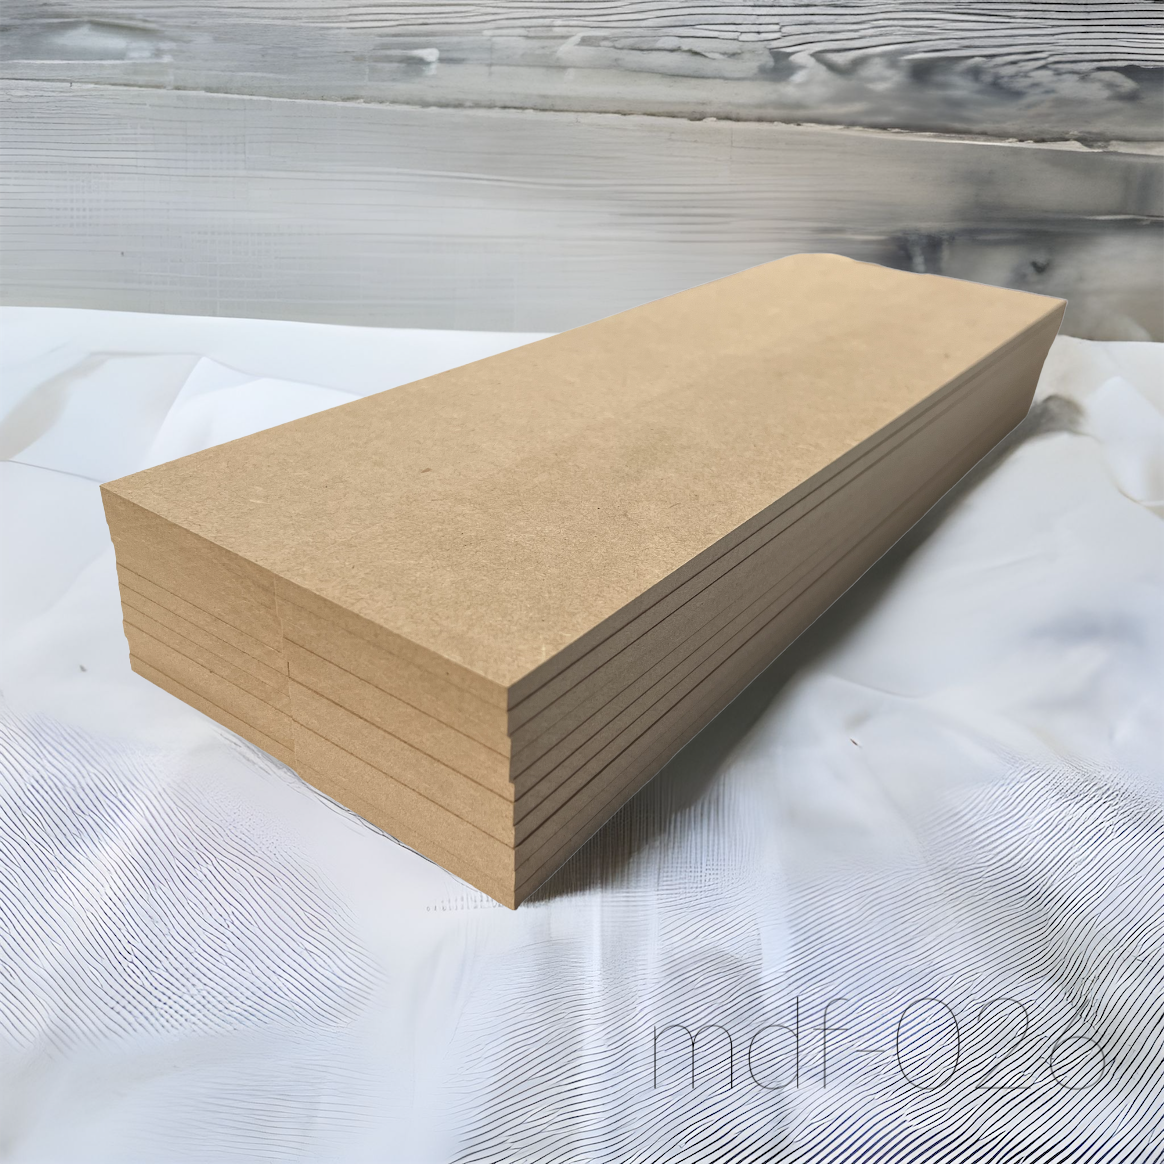 木材 MDF材 18mm厚 900mm×1800mm (3×6・サブロク) 1枚 MDFボード MDF板 直線カットオーダー対応(10回無料) 板 diy 材料 (事業所向け) - 6